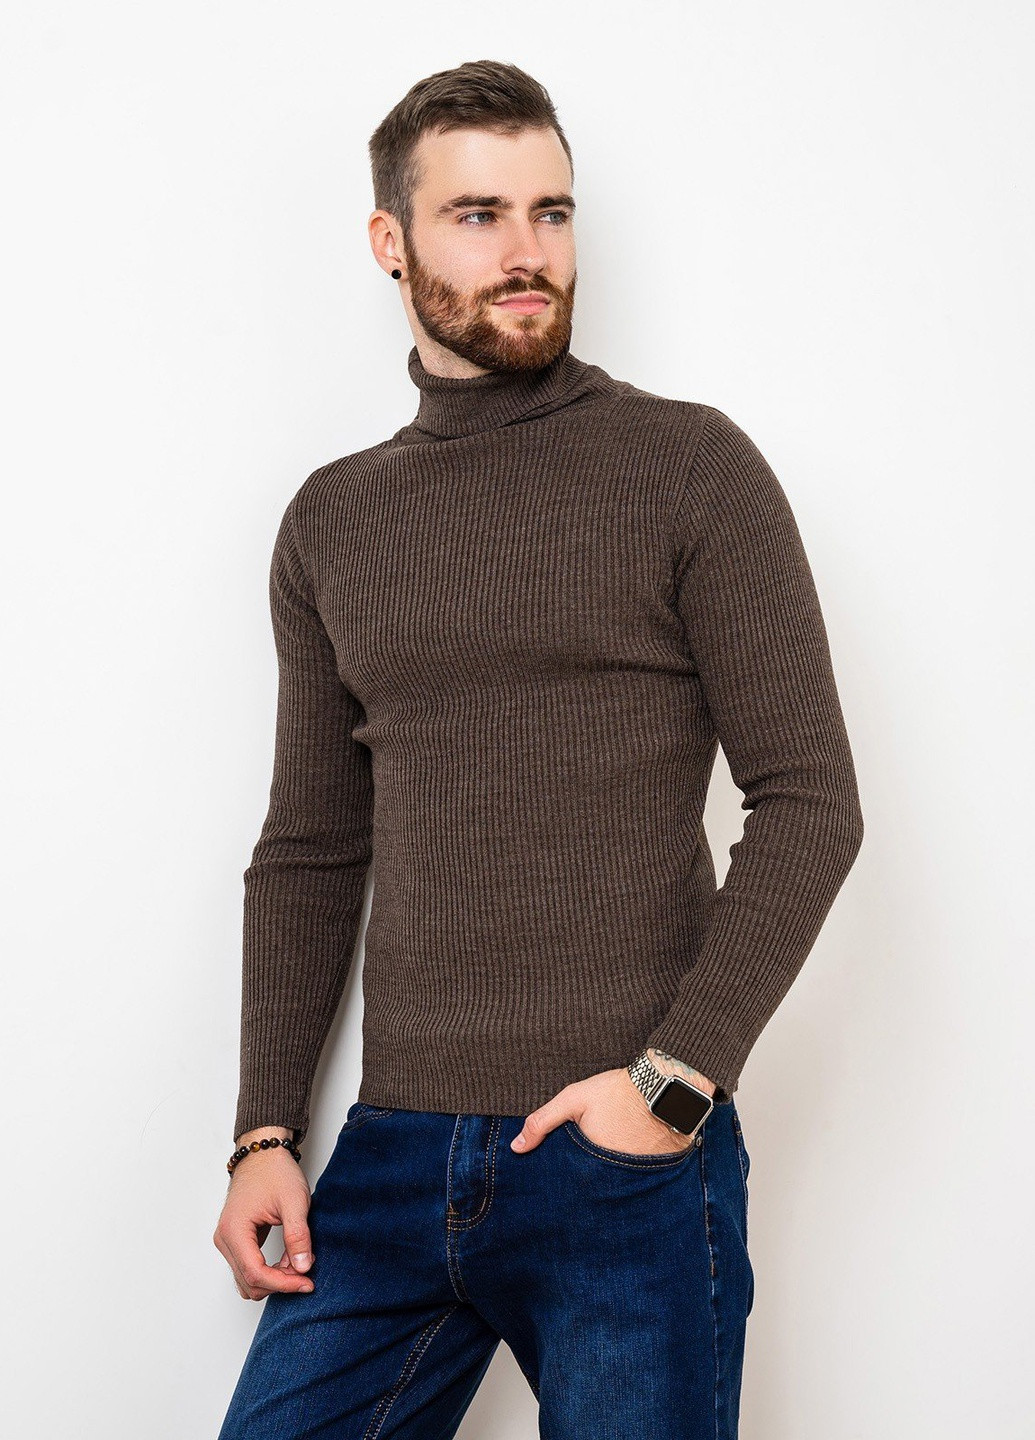 Коричневый демисезонный свитер мужской джемпер ISSA PLUS GN4-58